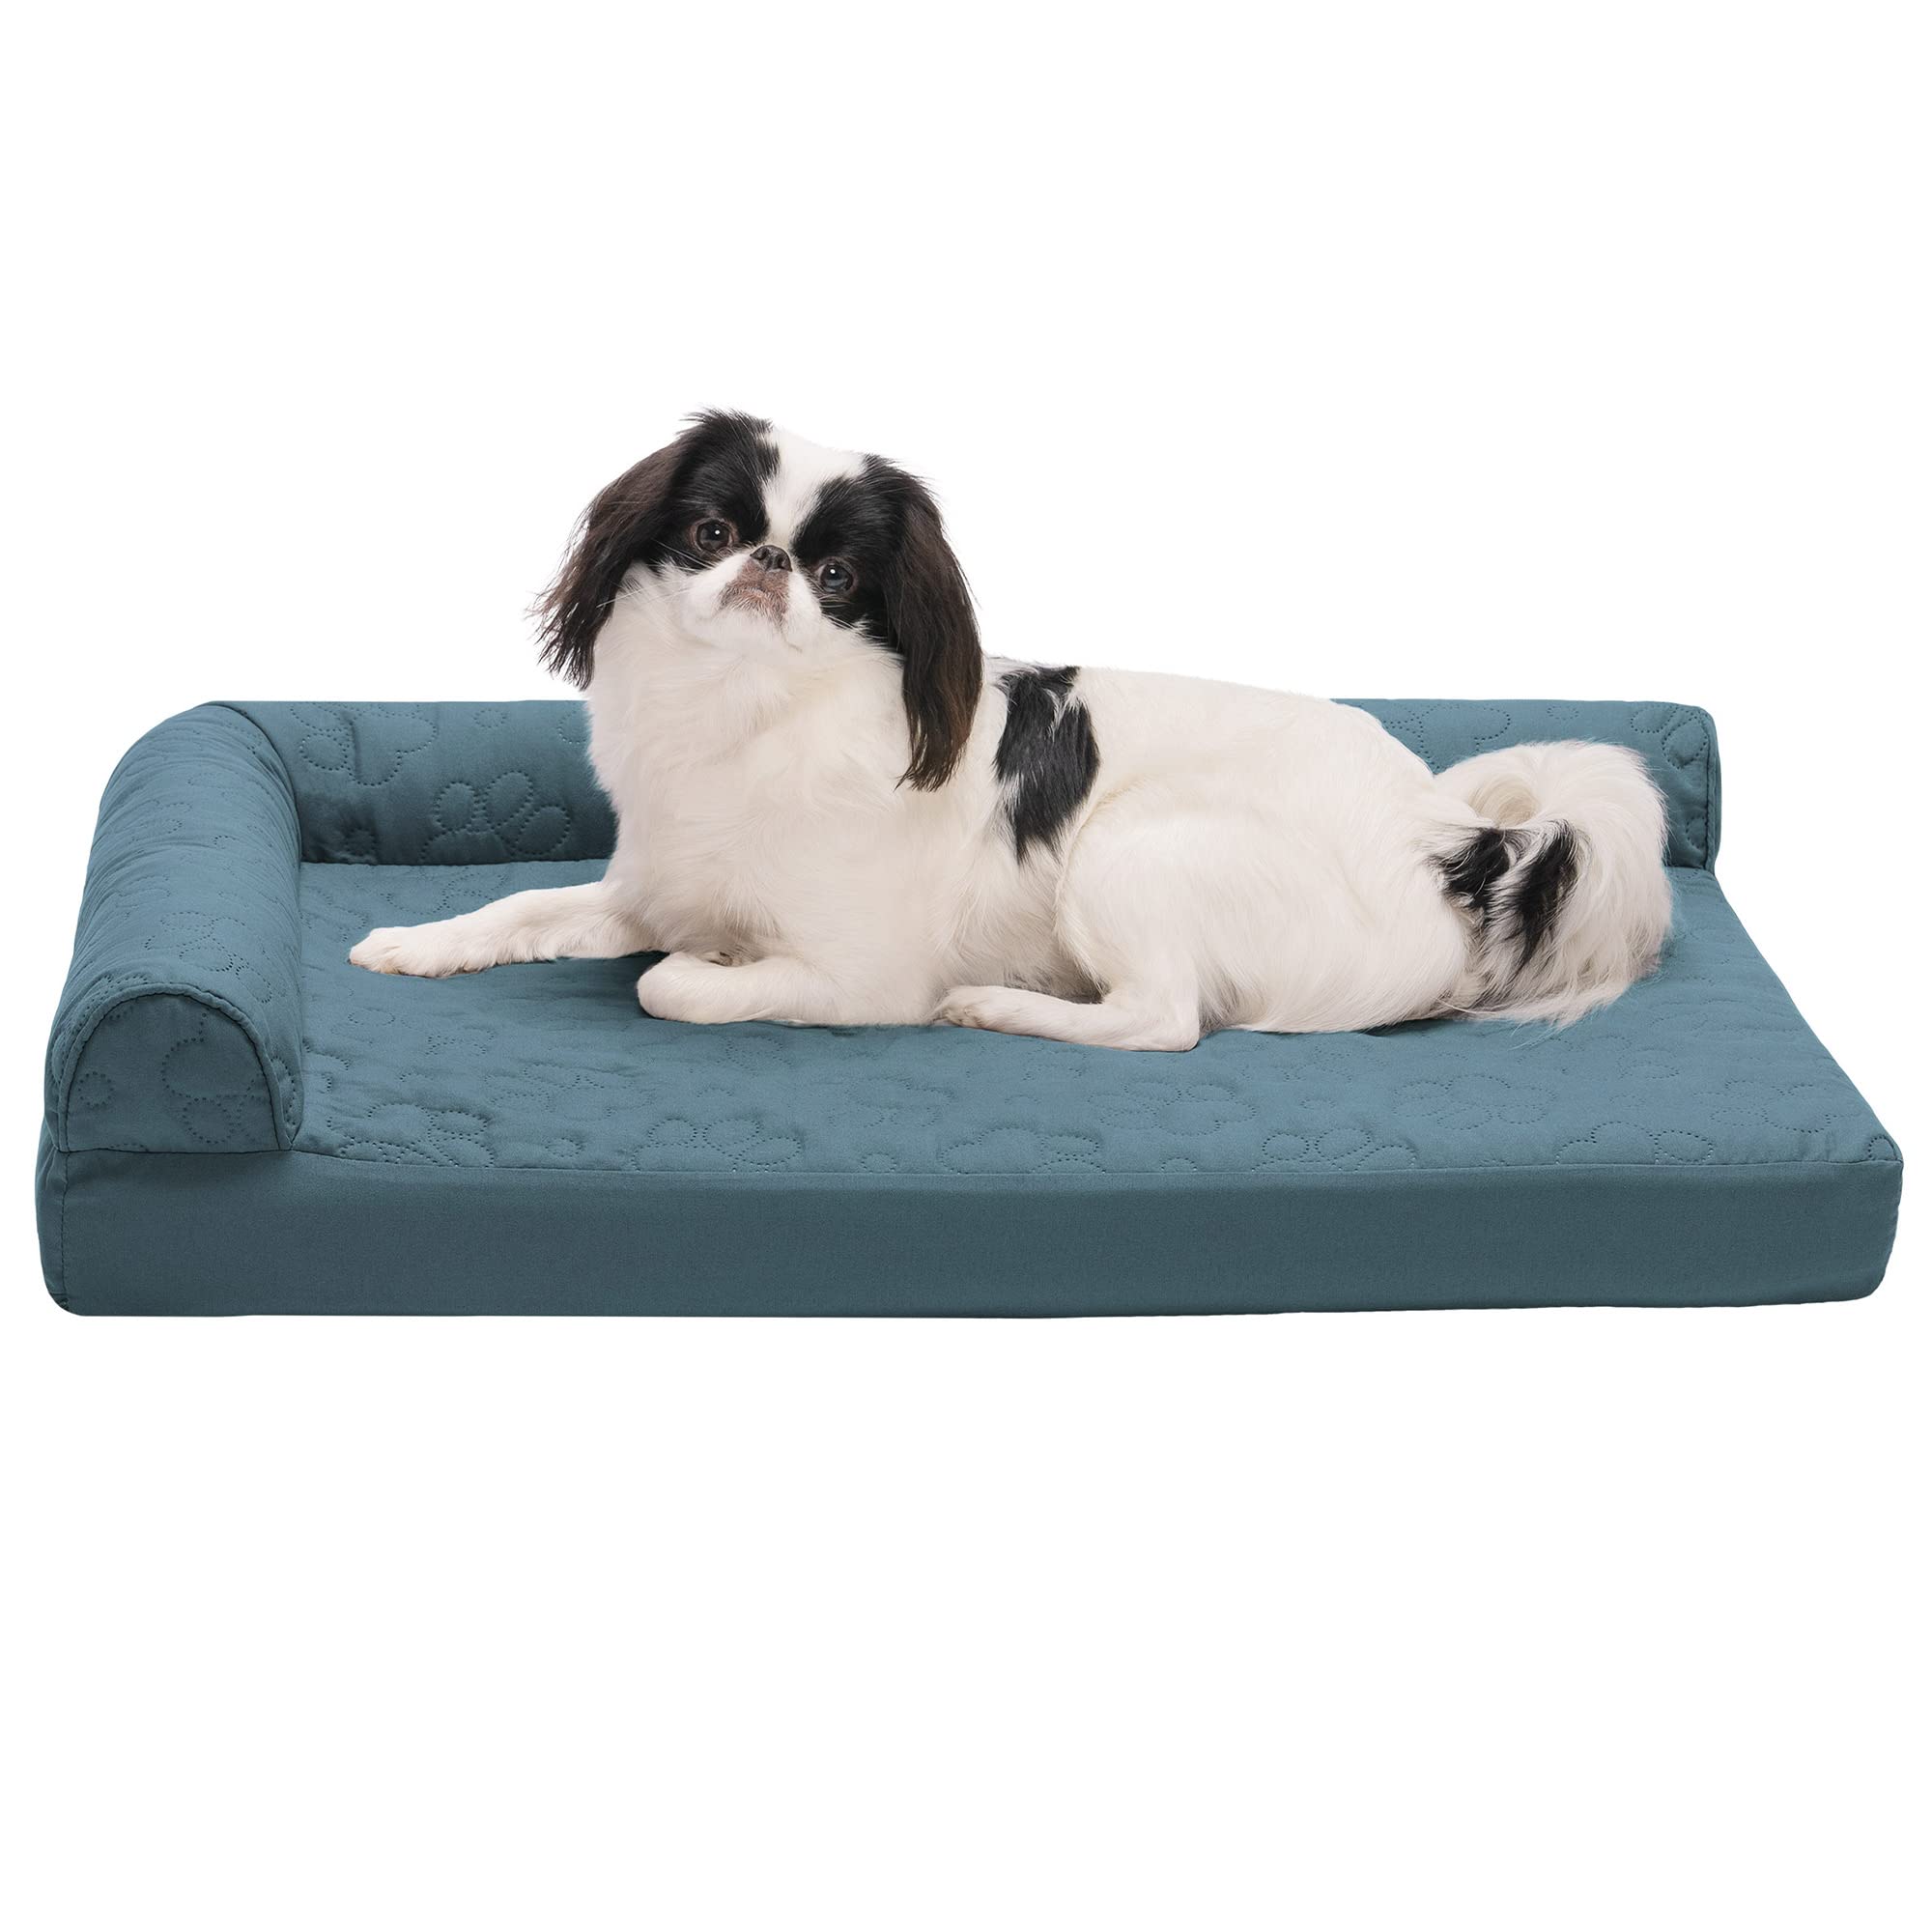 Furhaven 中型整形外科用犬用ベッド ピンソニック キルティング足 L字型長椅子 取り外し可能な洗面器付き